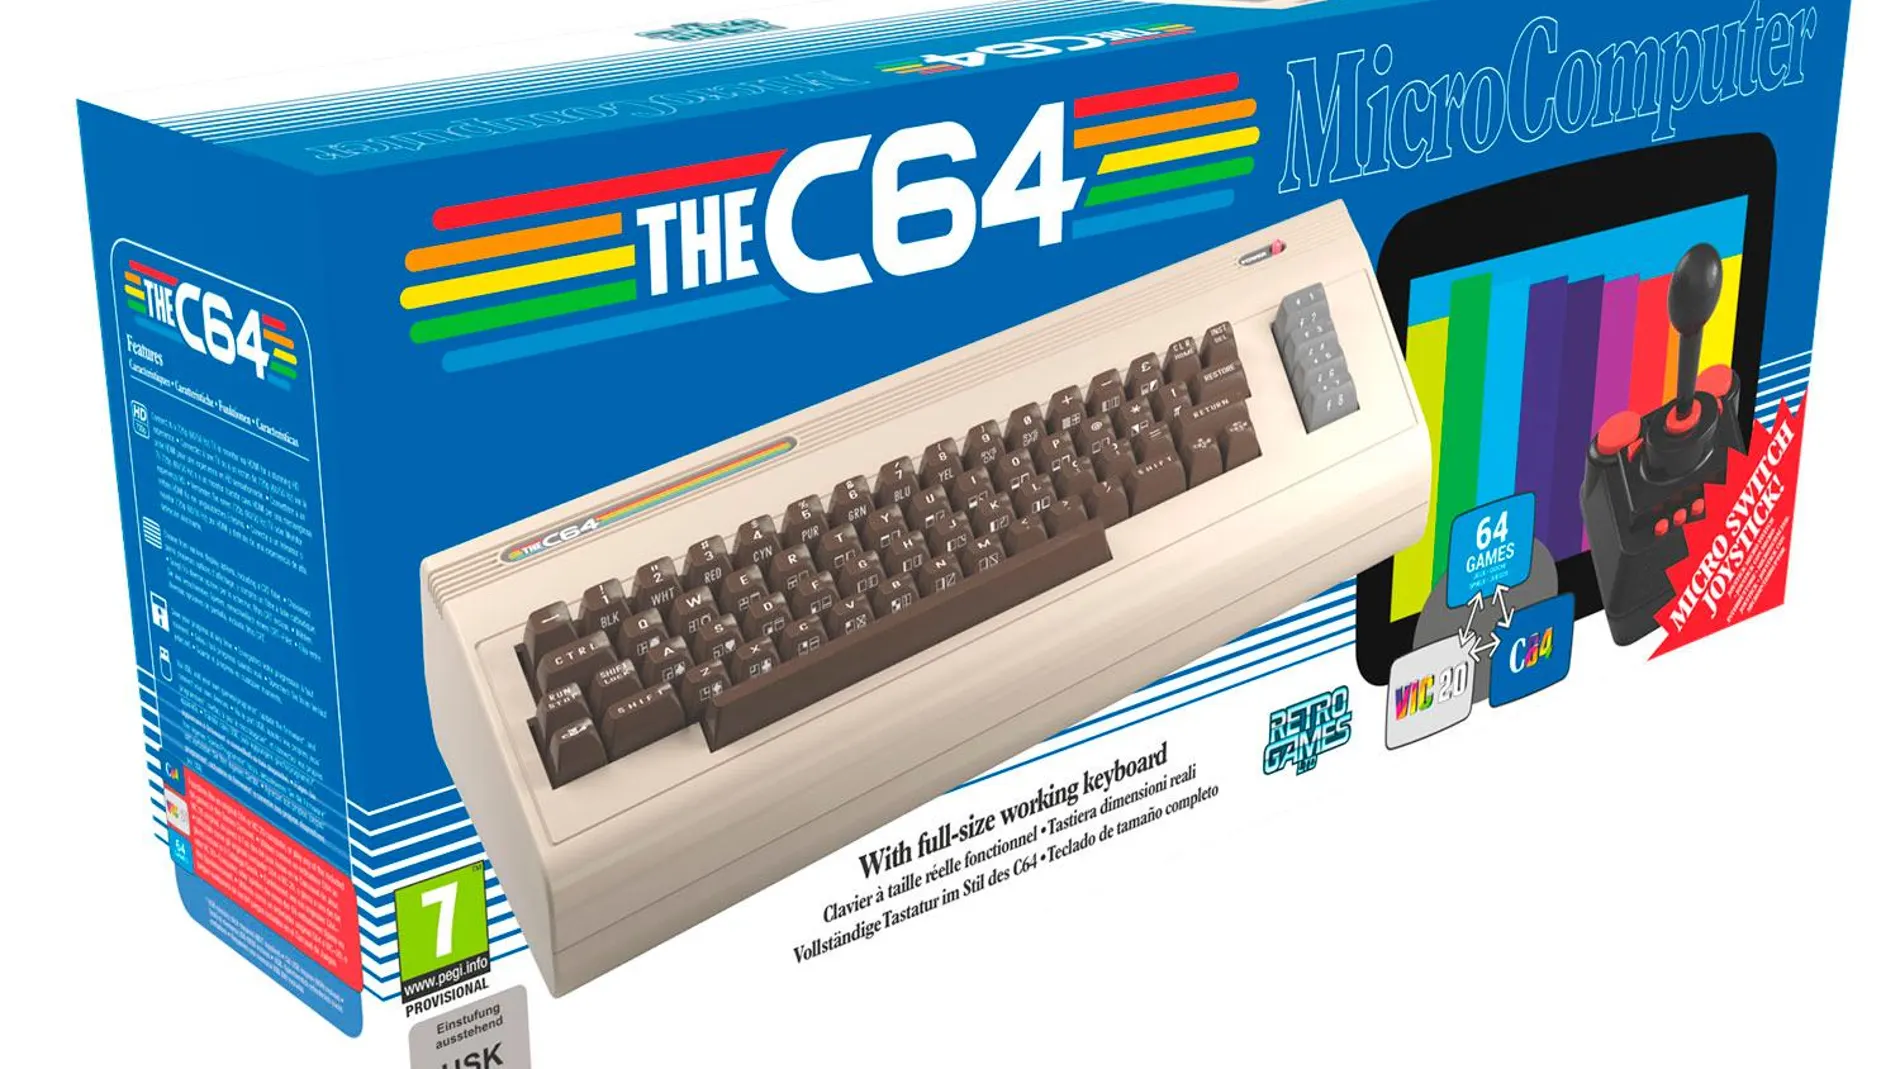 Imagen del THEC64, la revisión de Commodore 64